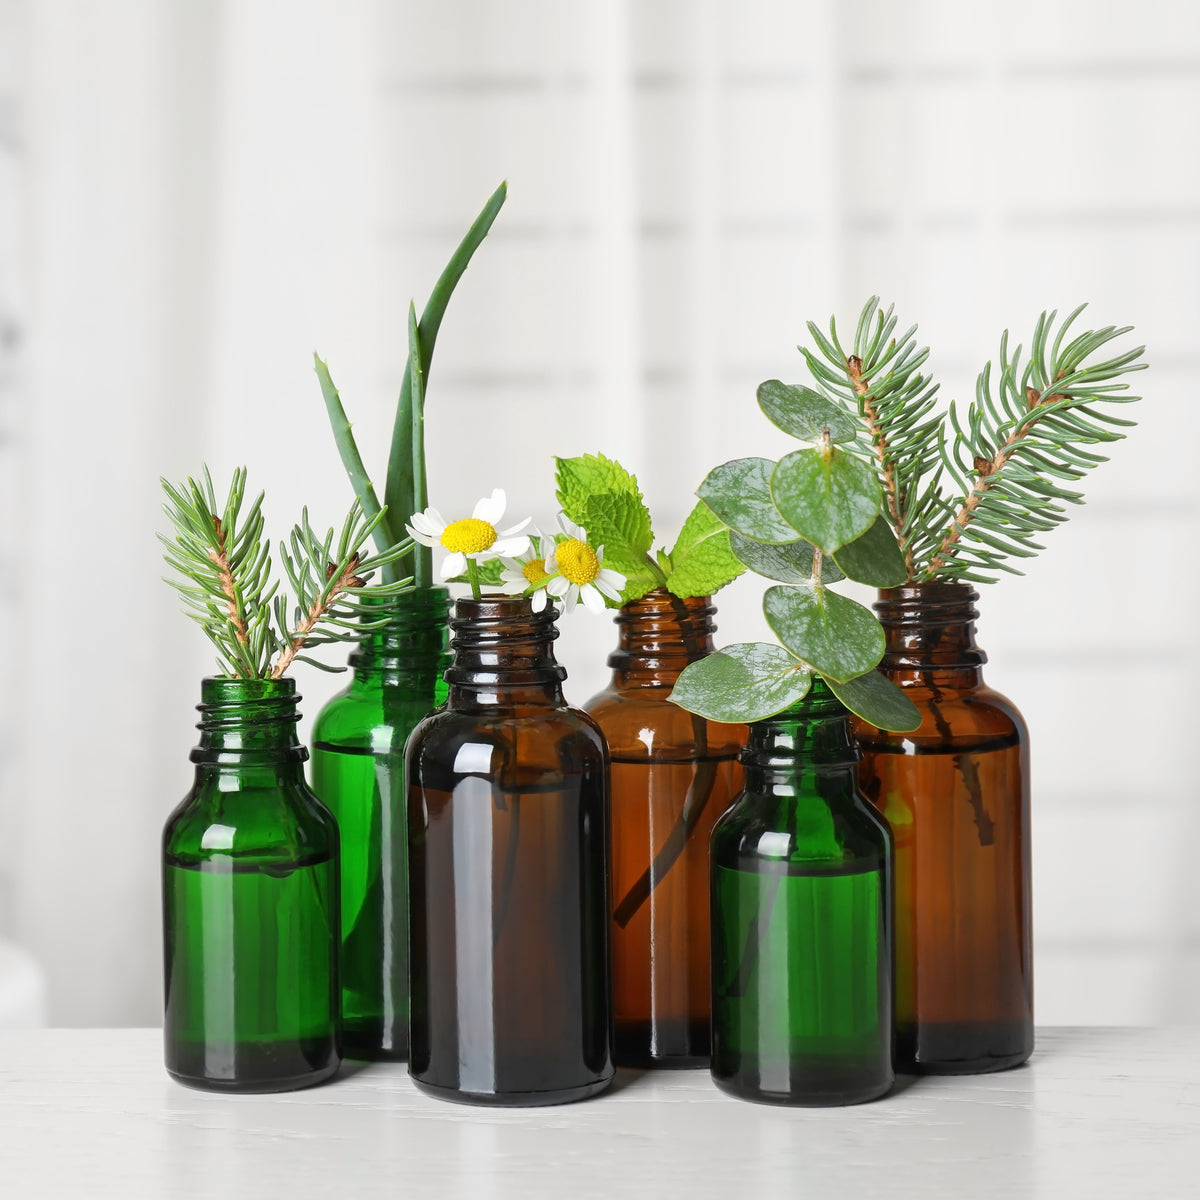 Amber Essential Oil — Wholesale Botanics